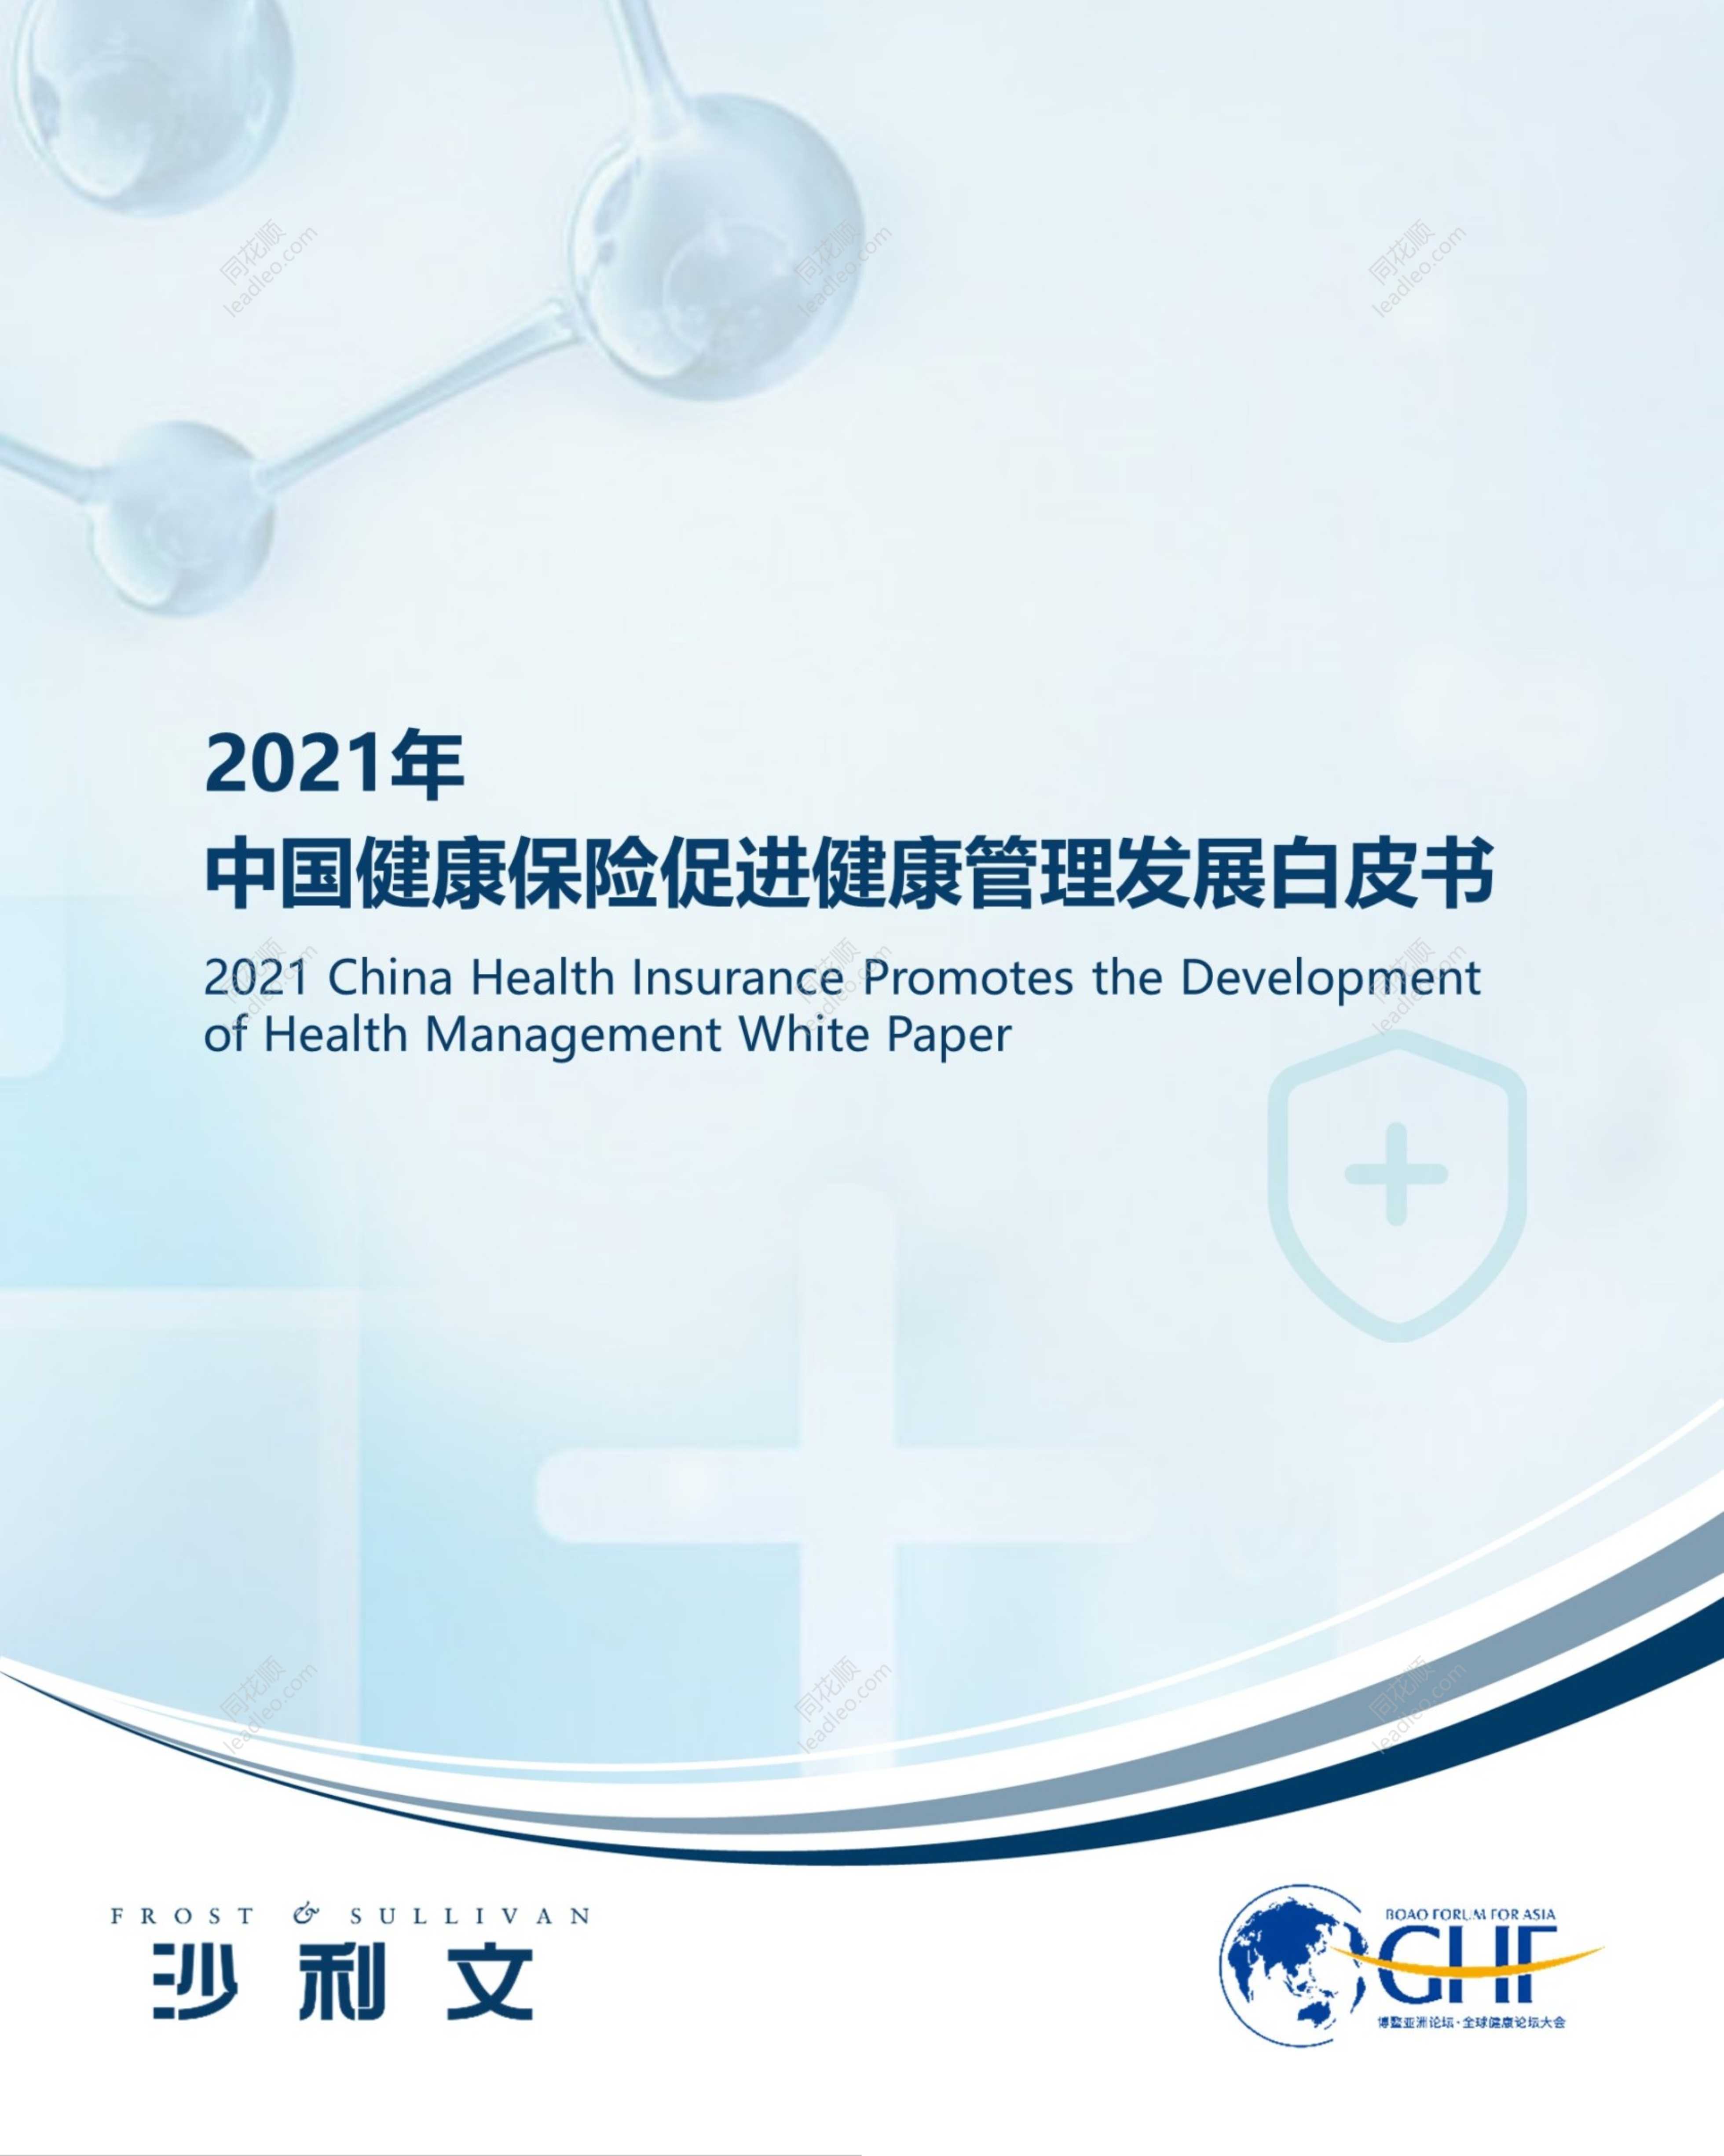 2021年中国健康保险促进健康管理发展白皮书